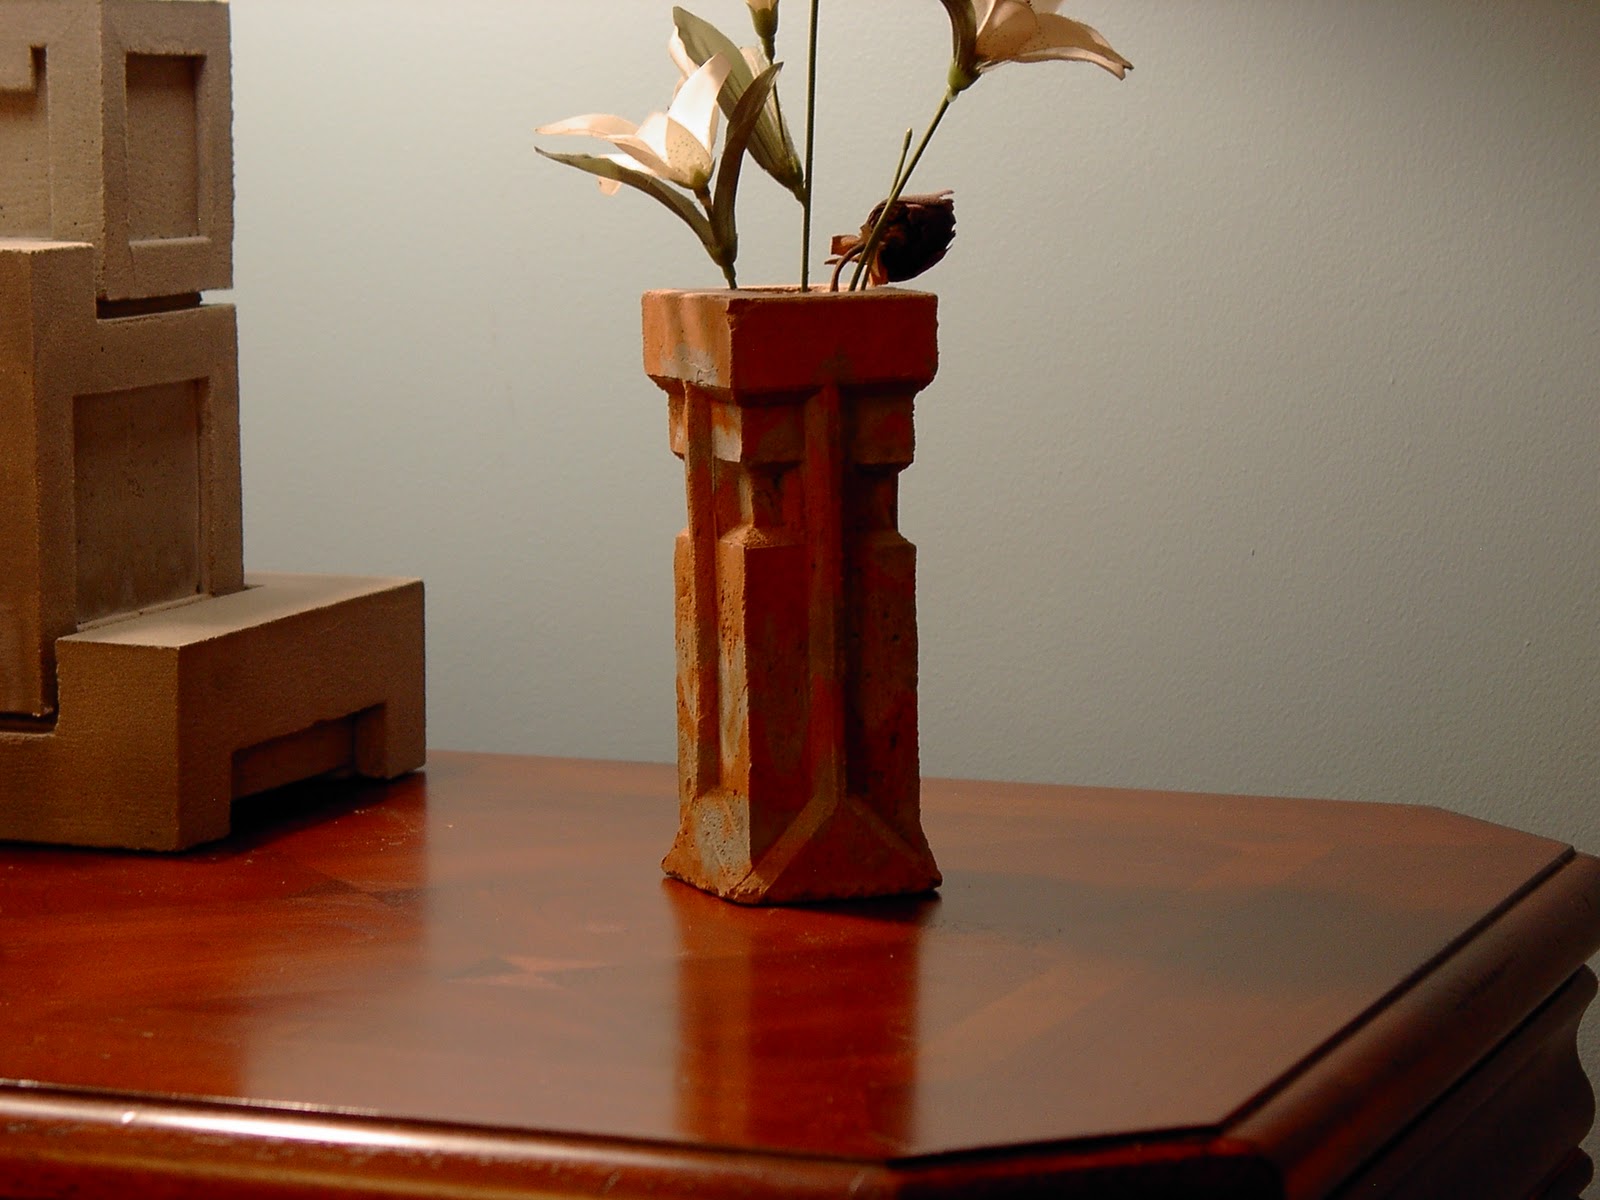 My Creativity Engine: Concrete Vases